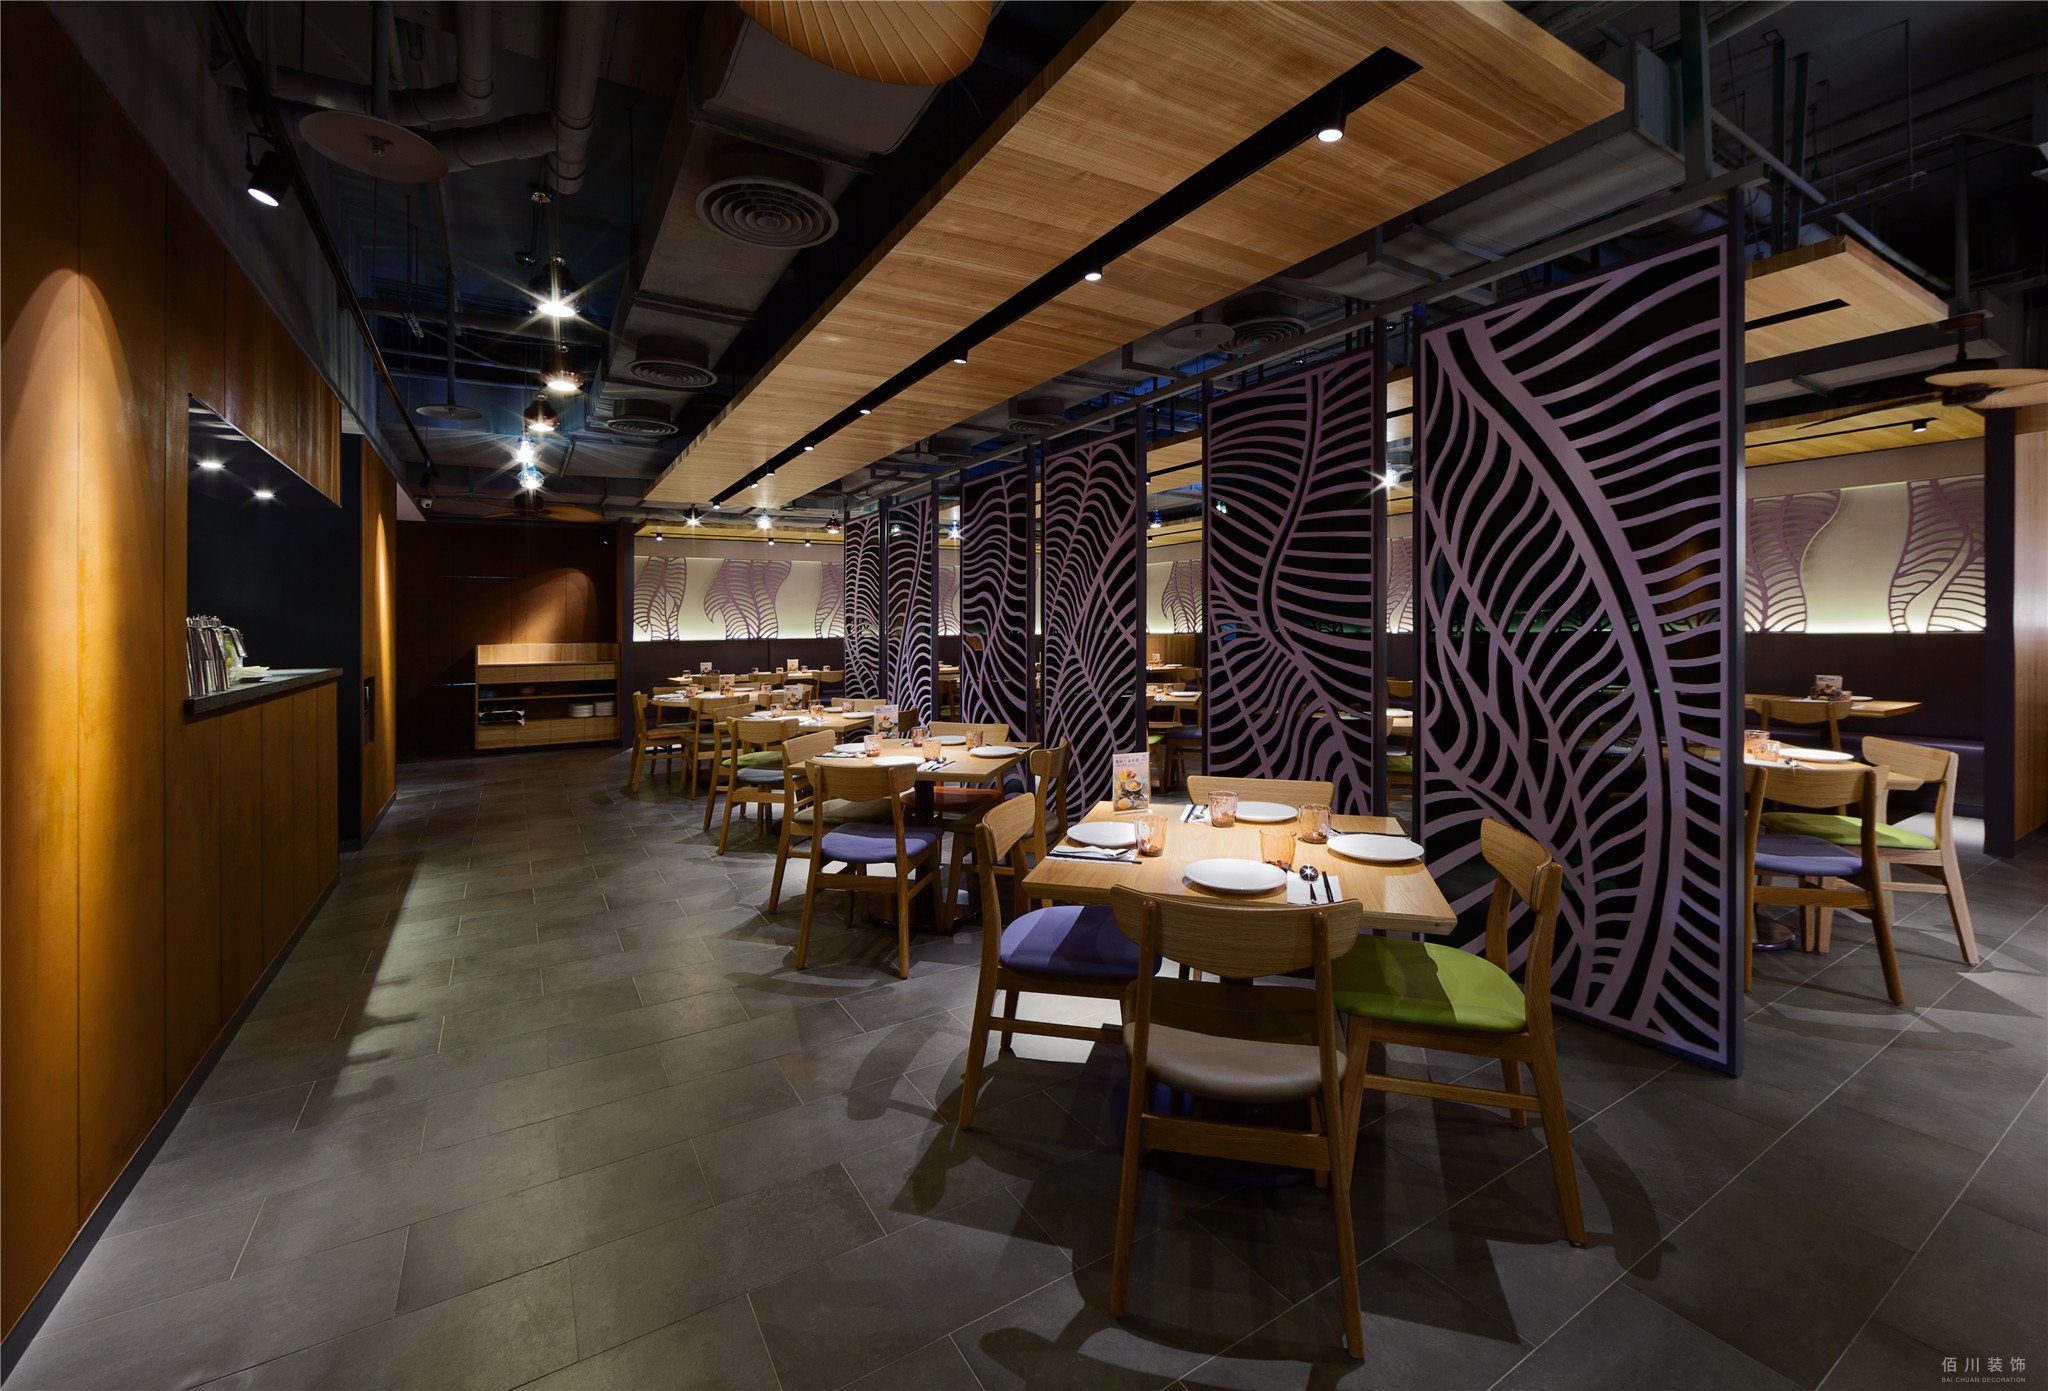 南京中餐厅装修公司 中餐厅装修设计要注重文化